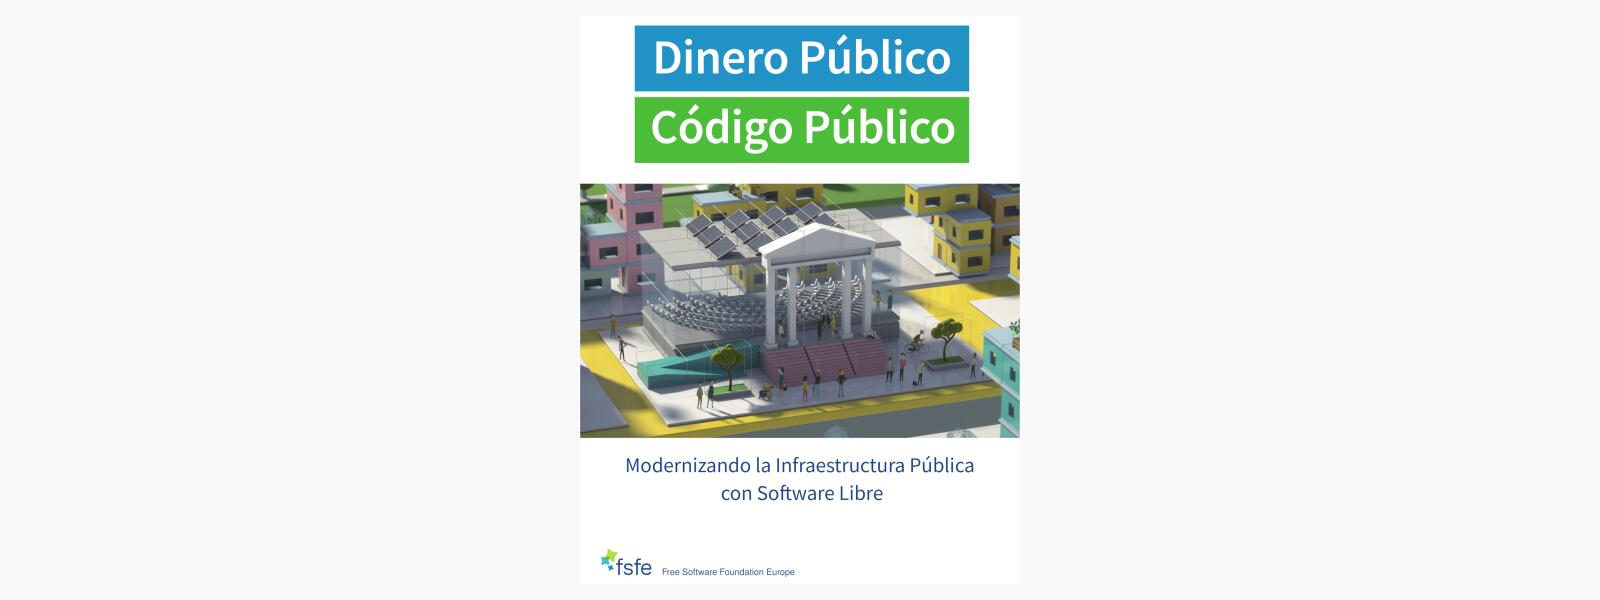 El folleto ¿Dinero público? ¡Código público! disponible en Español